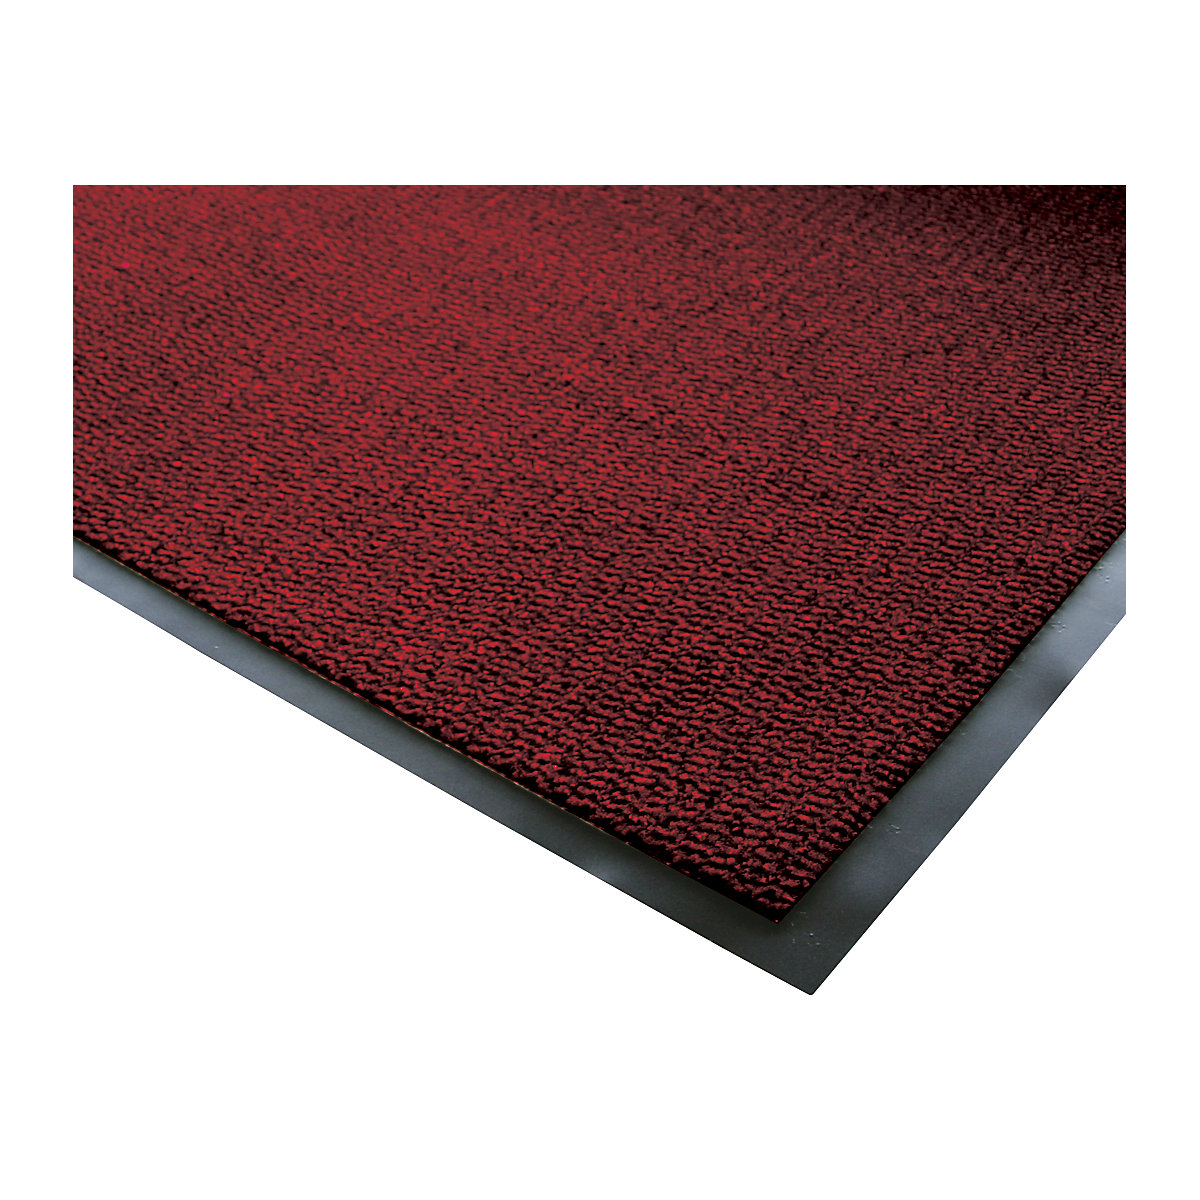 Mata wychwytująca brud do stosowania wewnątrz, runo z polipropylenu – COBA, dł. x szer. 1200 x 900 mm, czarny / czerwony